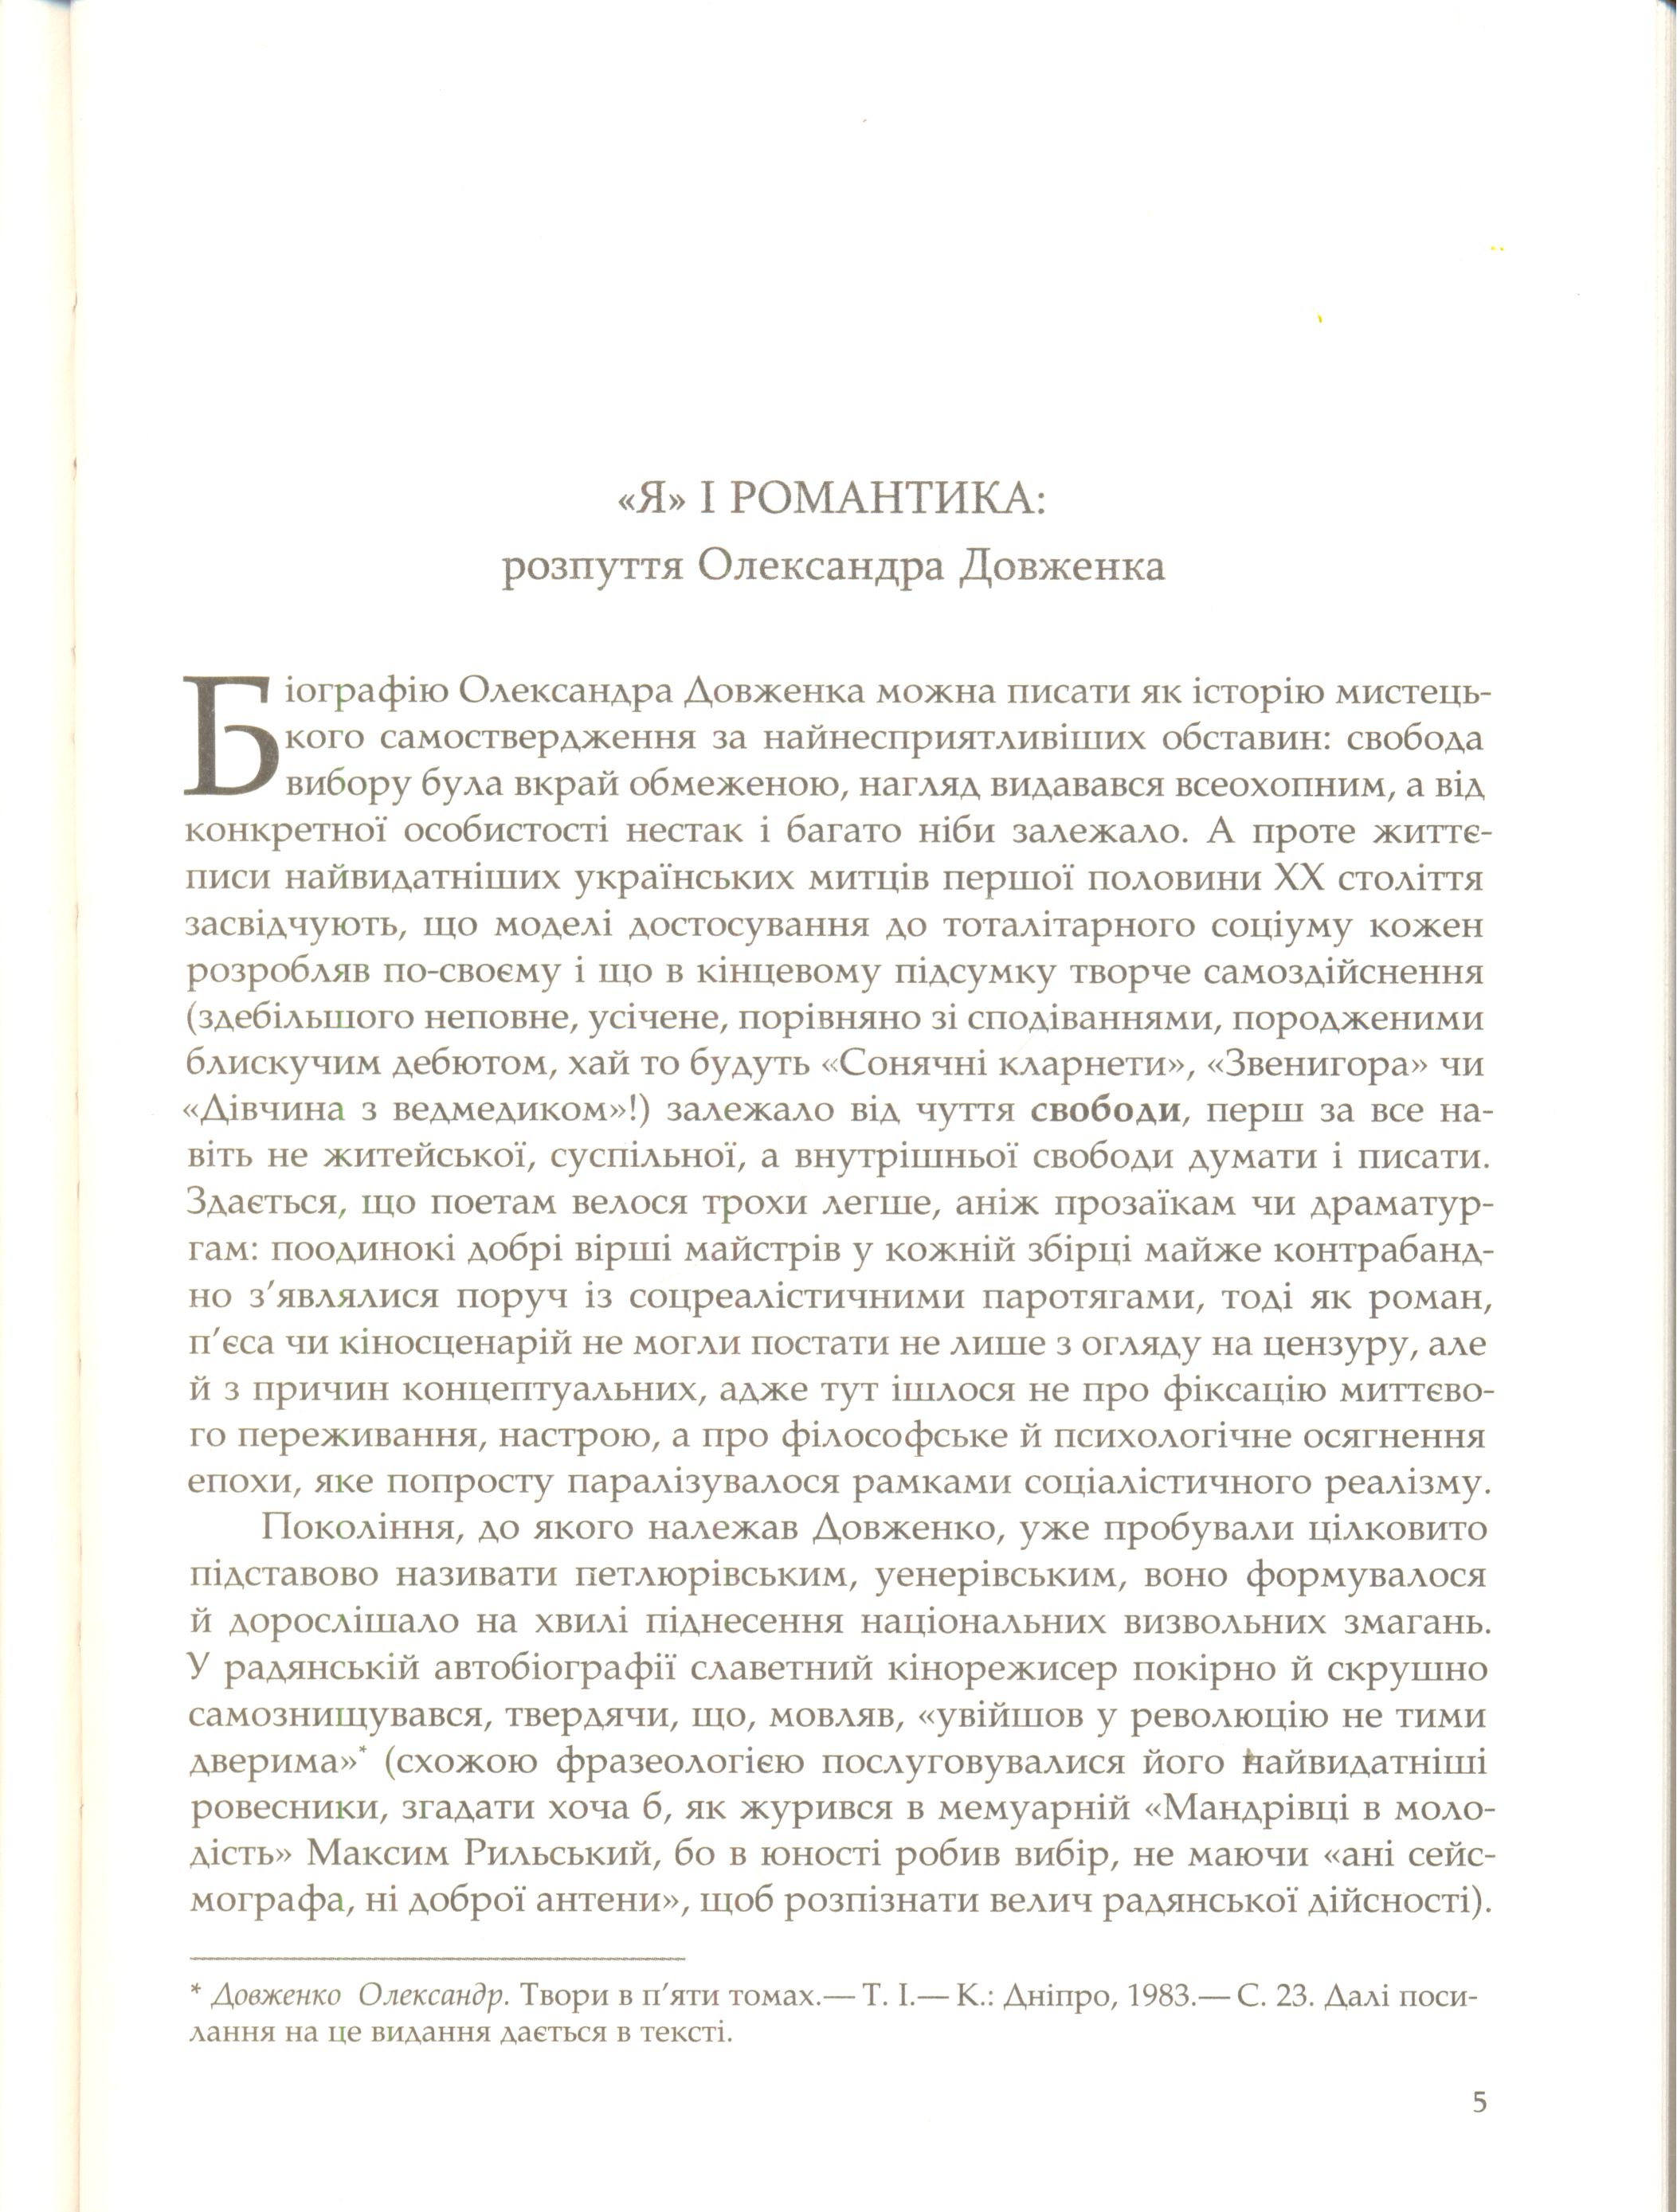 Довженко без гриму: листи, спогади, архівні знахідки